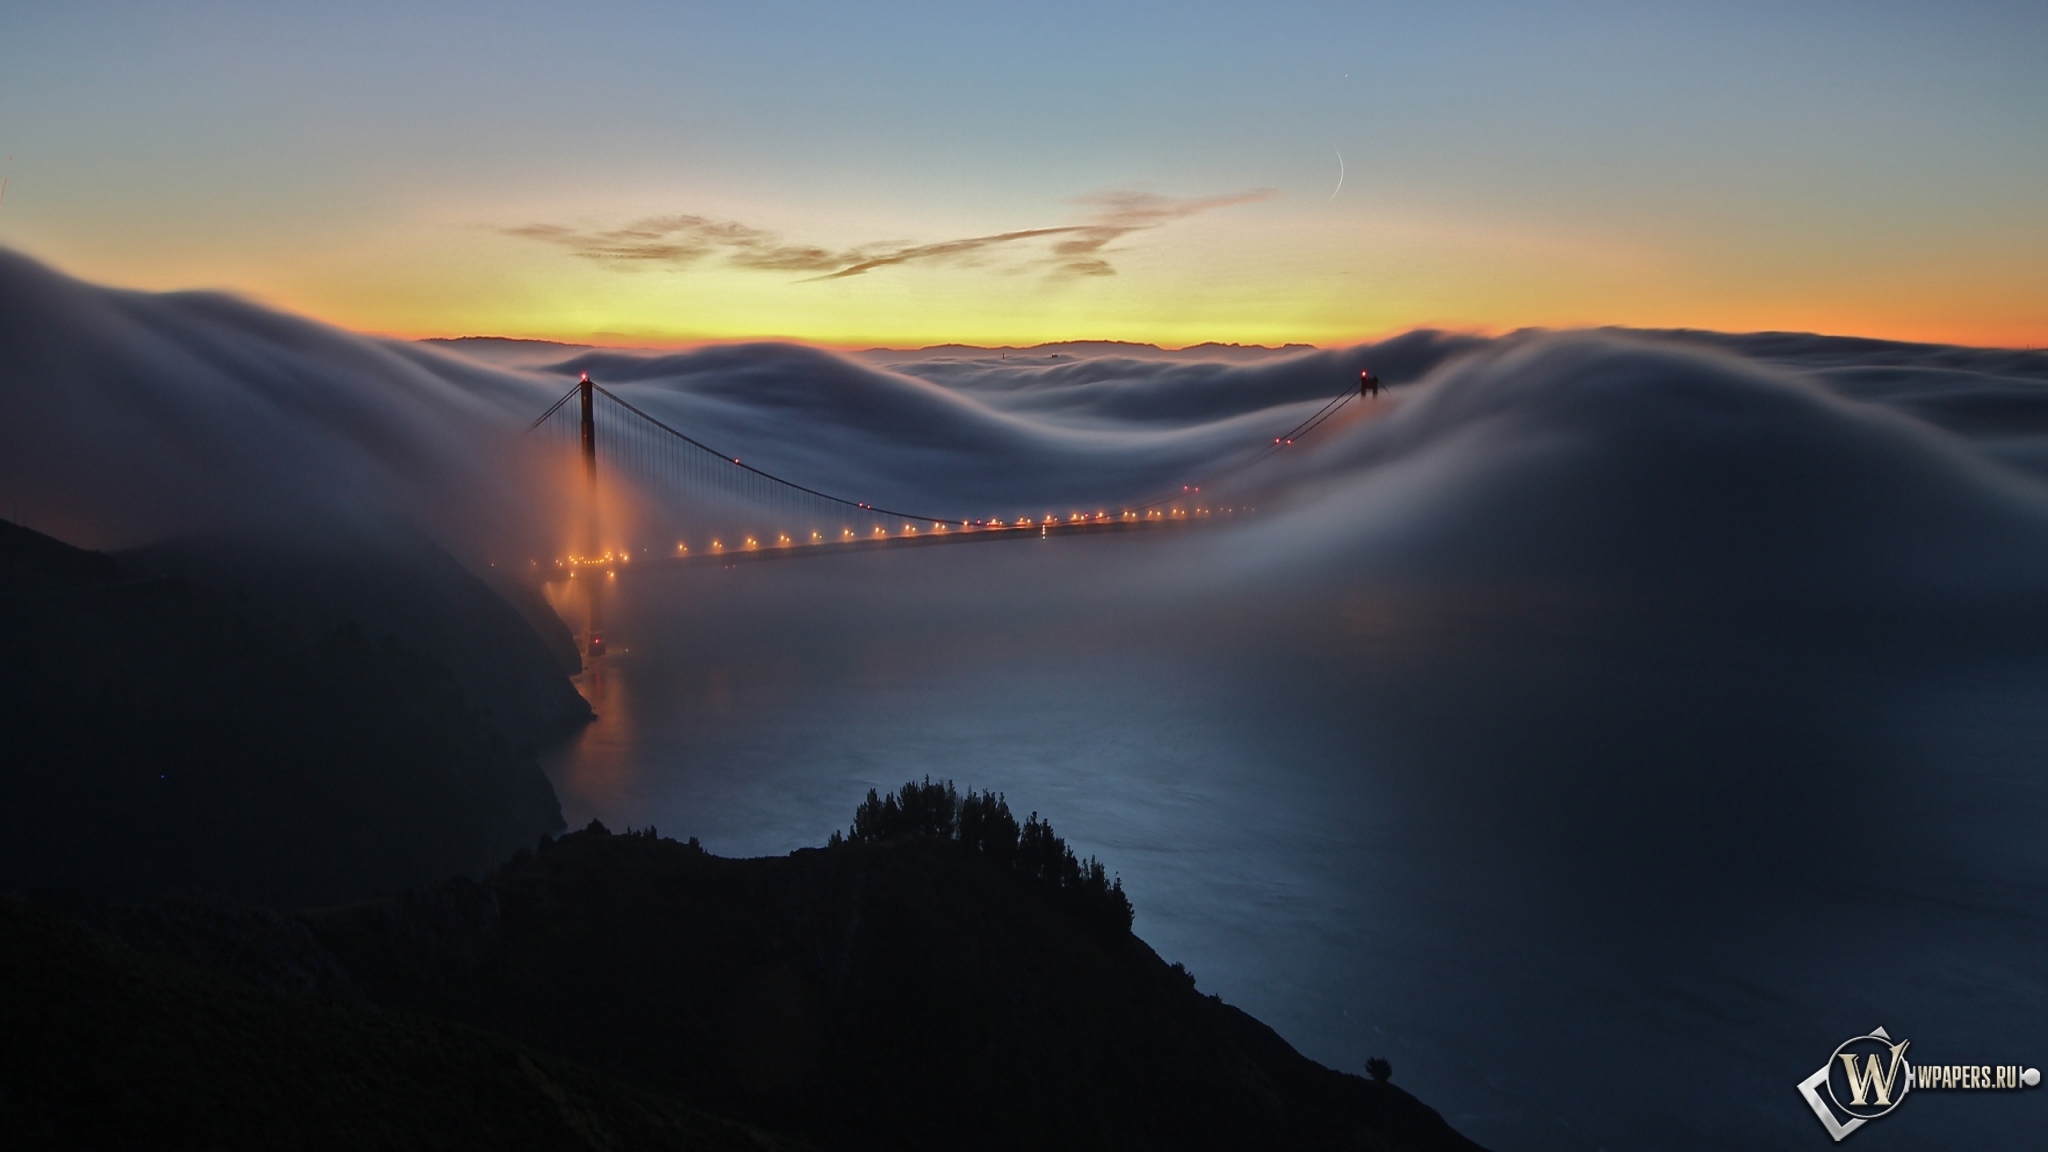 Мост Золотые ворота Сан-Франциско 2048x1152